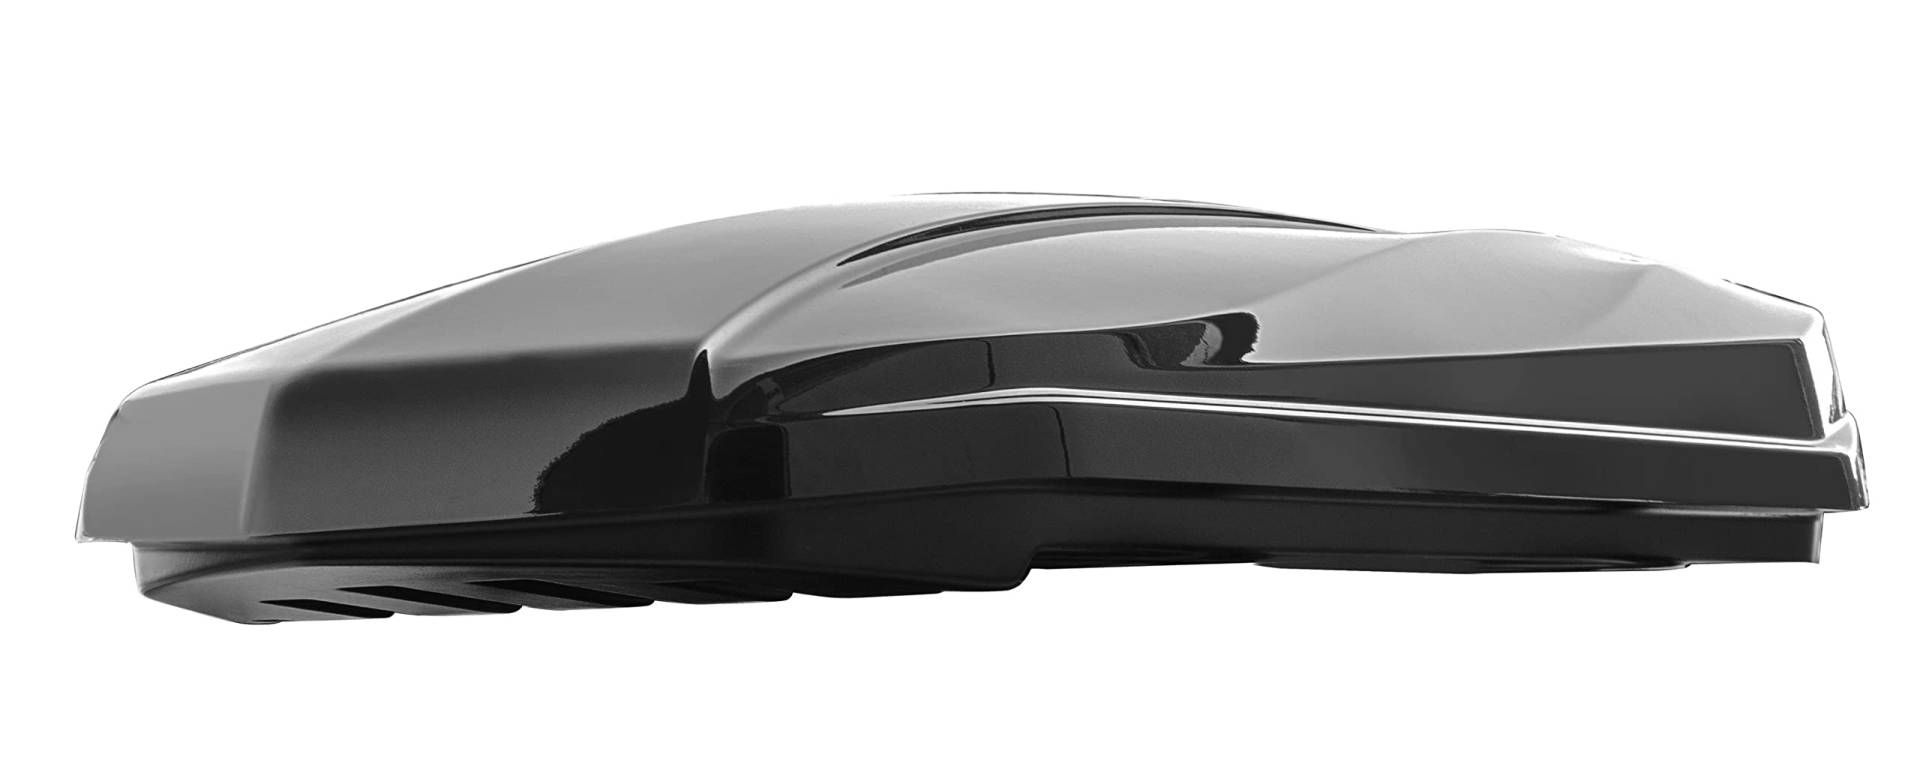 Dachbox Strike 440 Liter schwarz Hochglanz + Dachträger VDP Delta kompatibel mit BMW Serie 5 (G31) Touring (5 Türer) ab 2017 von VDP